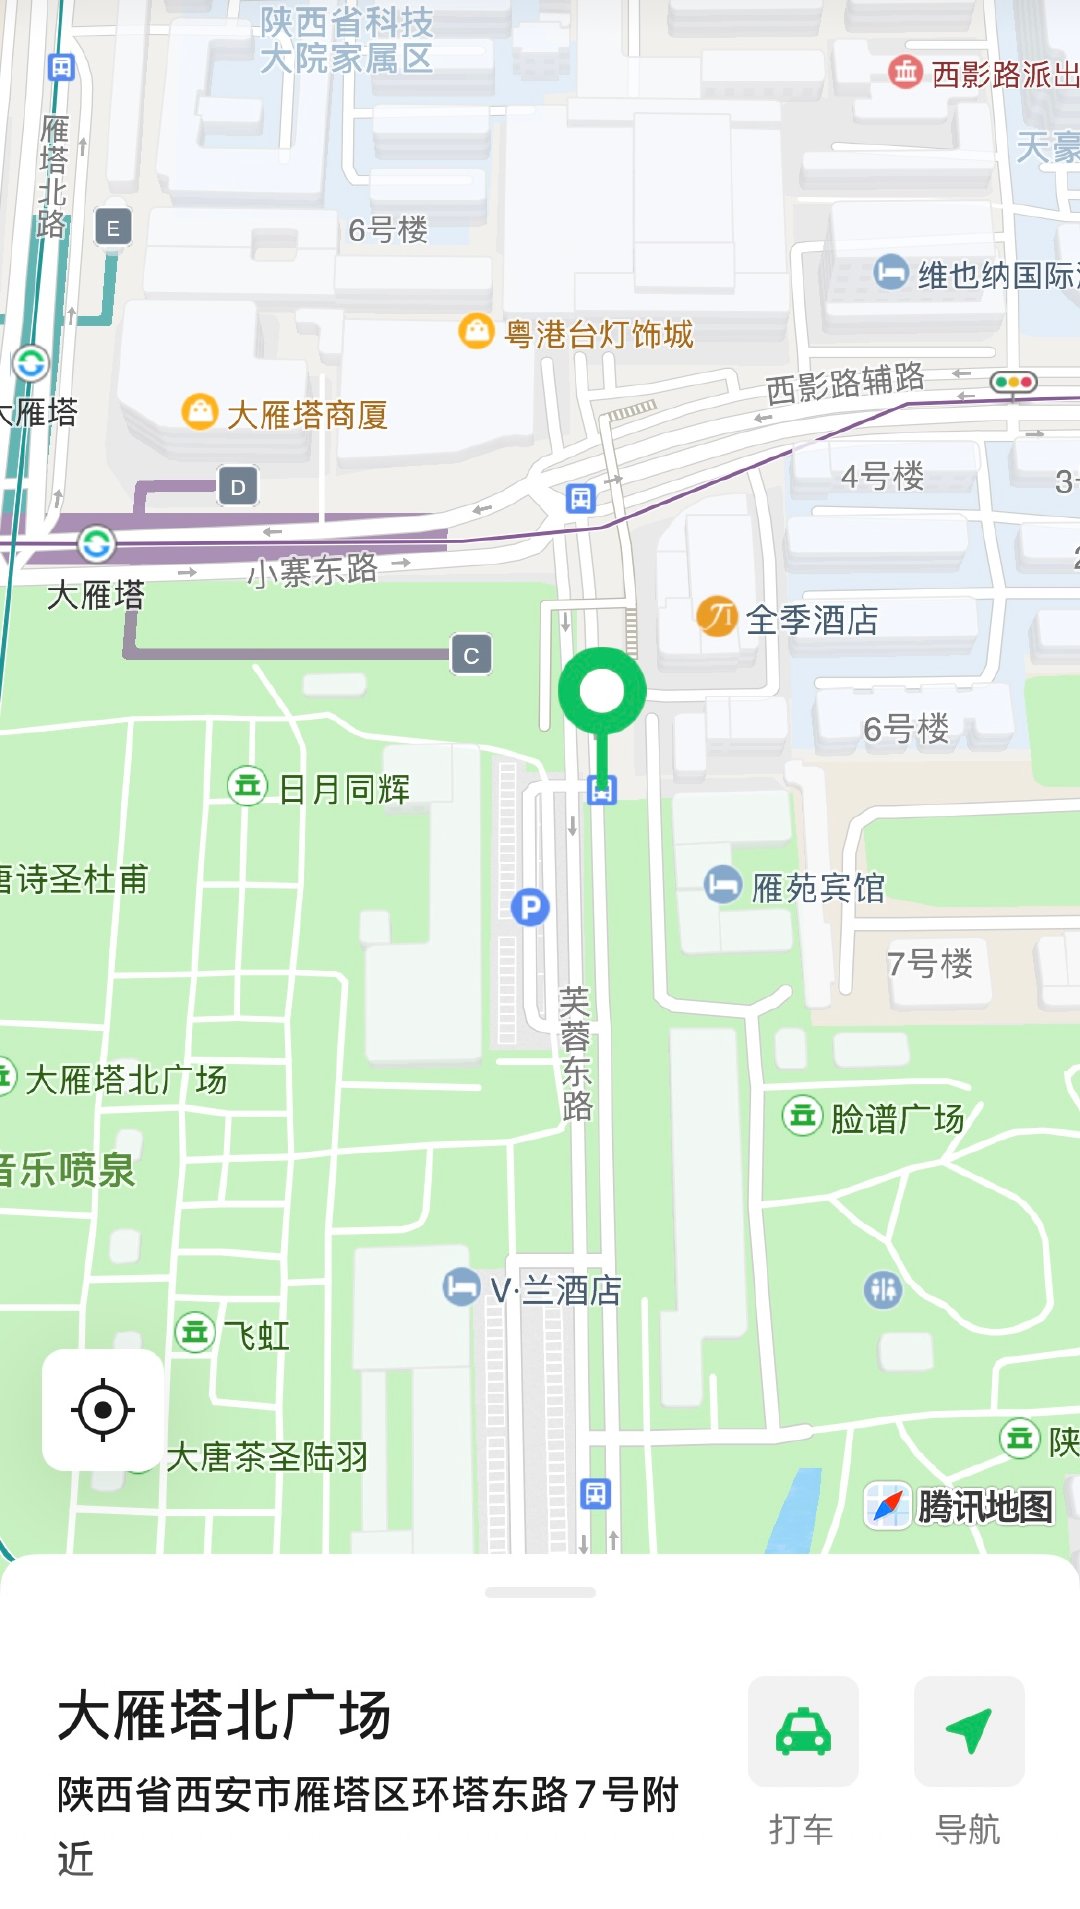 "五一"大雁塔、大唐不夜城开通6条前往地铁公交接驳线路